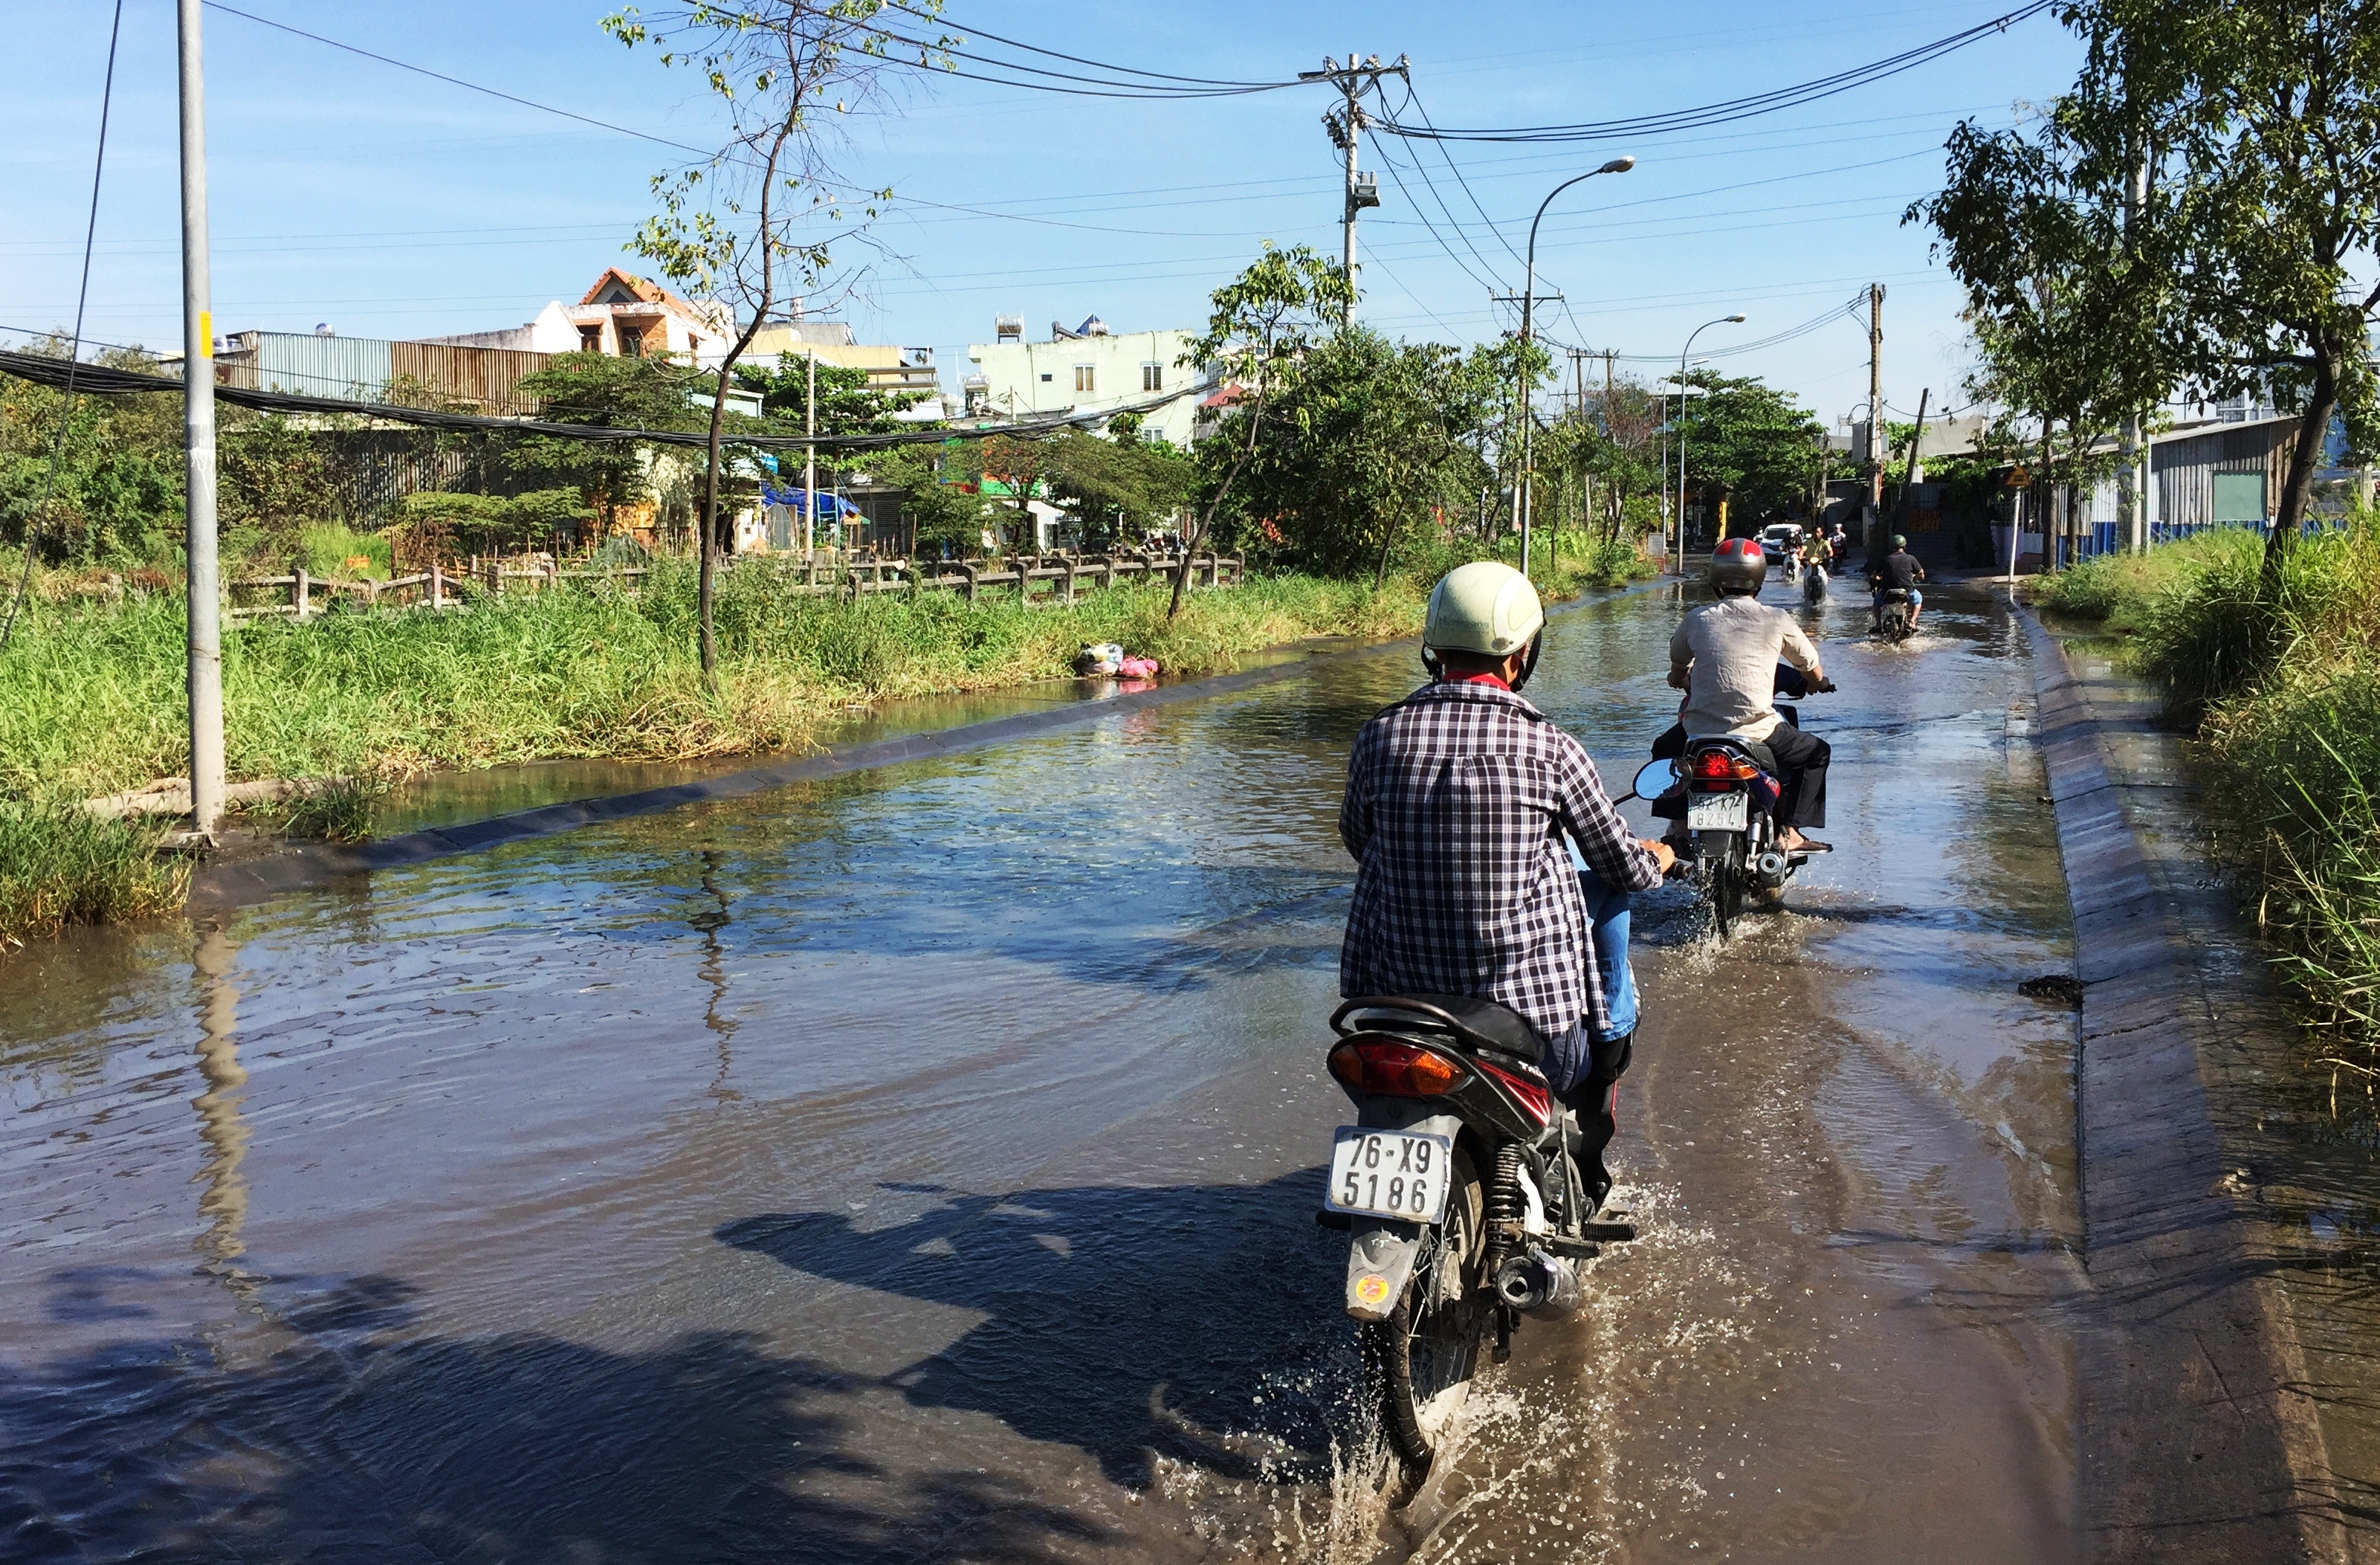 Phương tiện bì bõm lội qua đoạn đường ngập sâu trong nước giữa mùa khô ở Sài Gòn